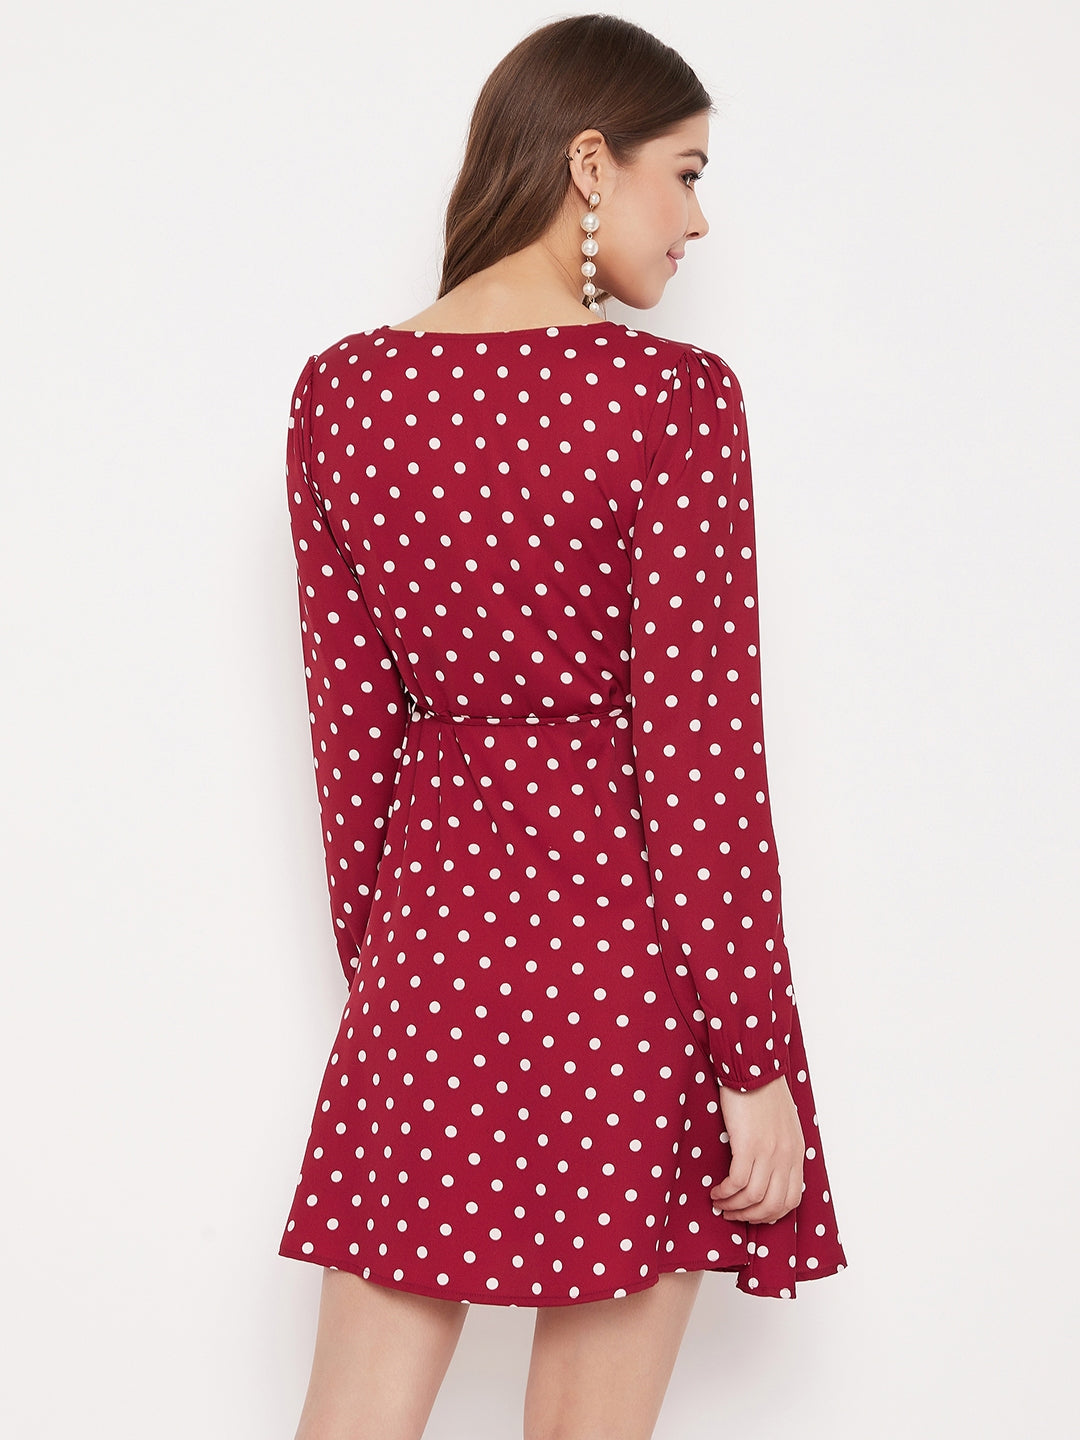 Berrylush Women Red & White Polka Dot Printed Wrap Mini Dress